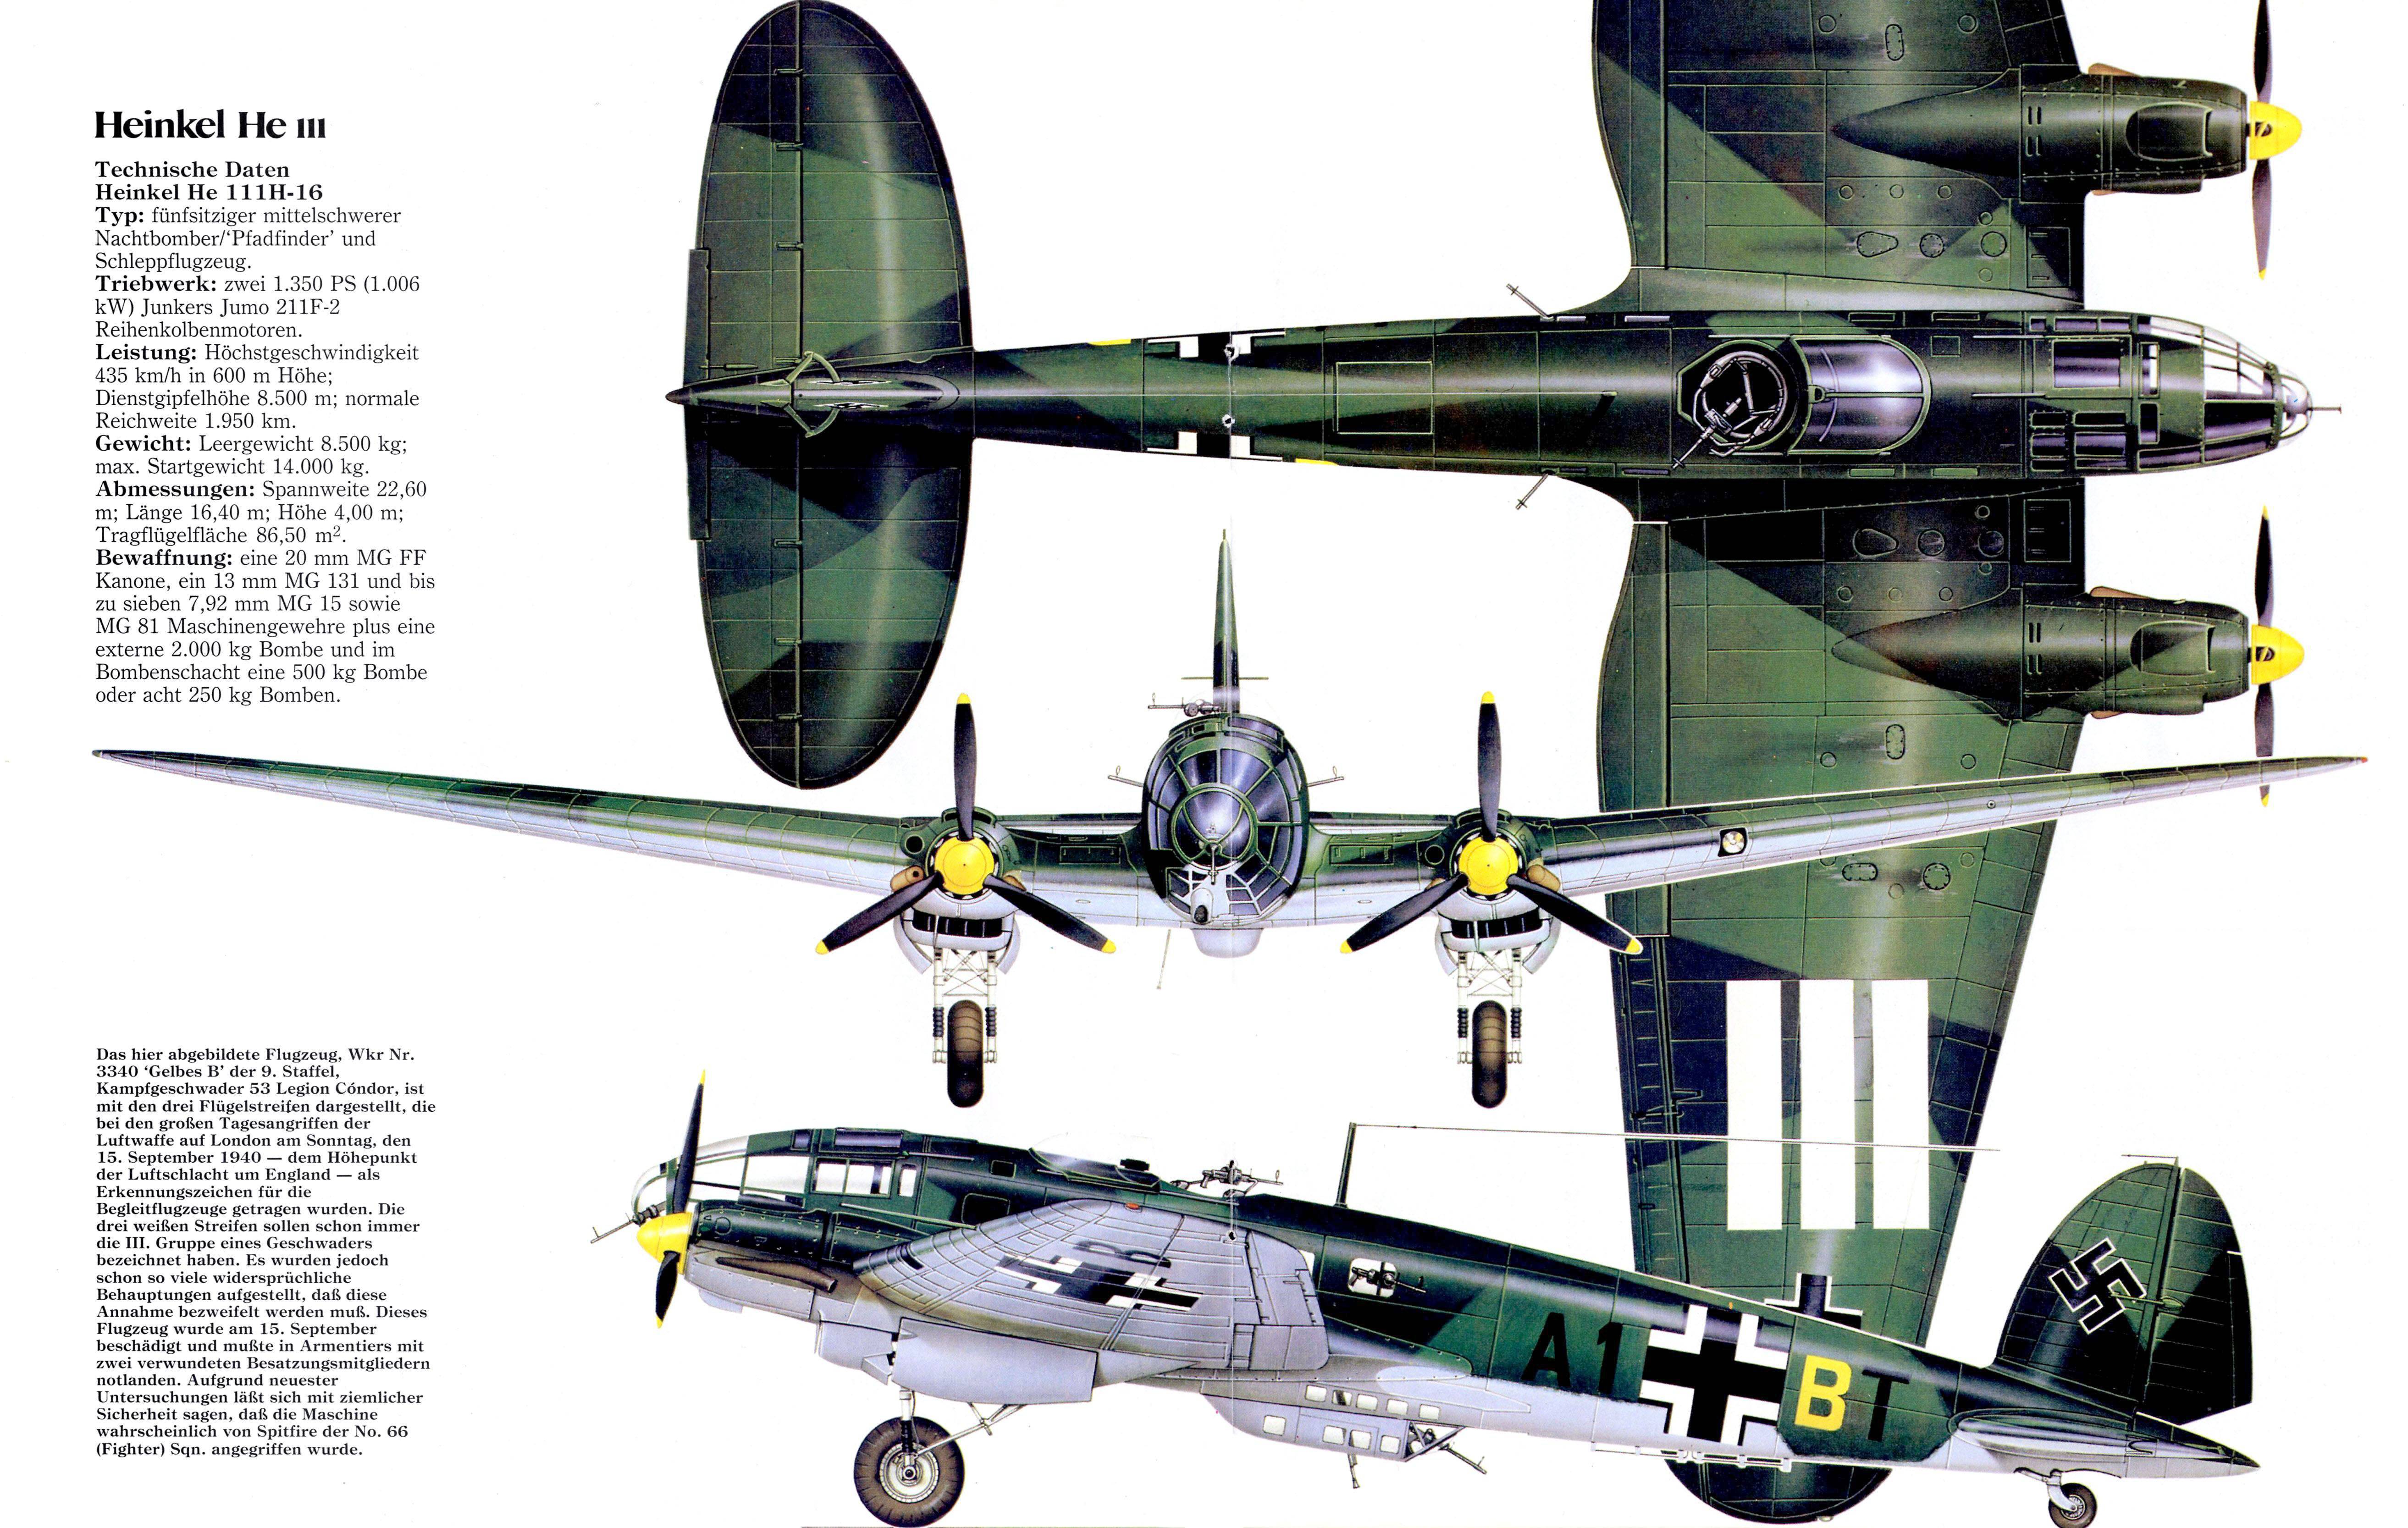 He-111 | вторая мировая вики | fandom